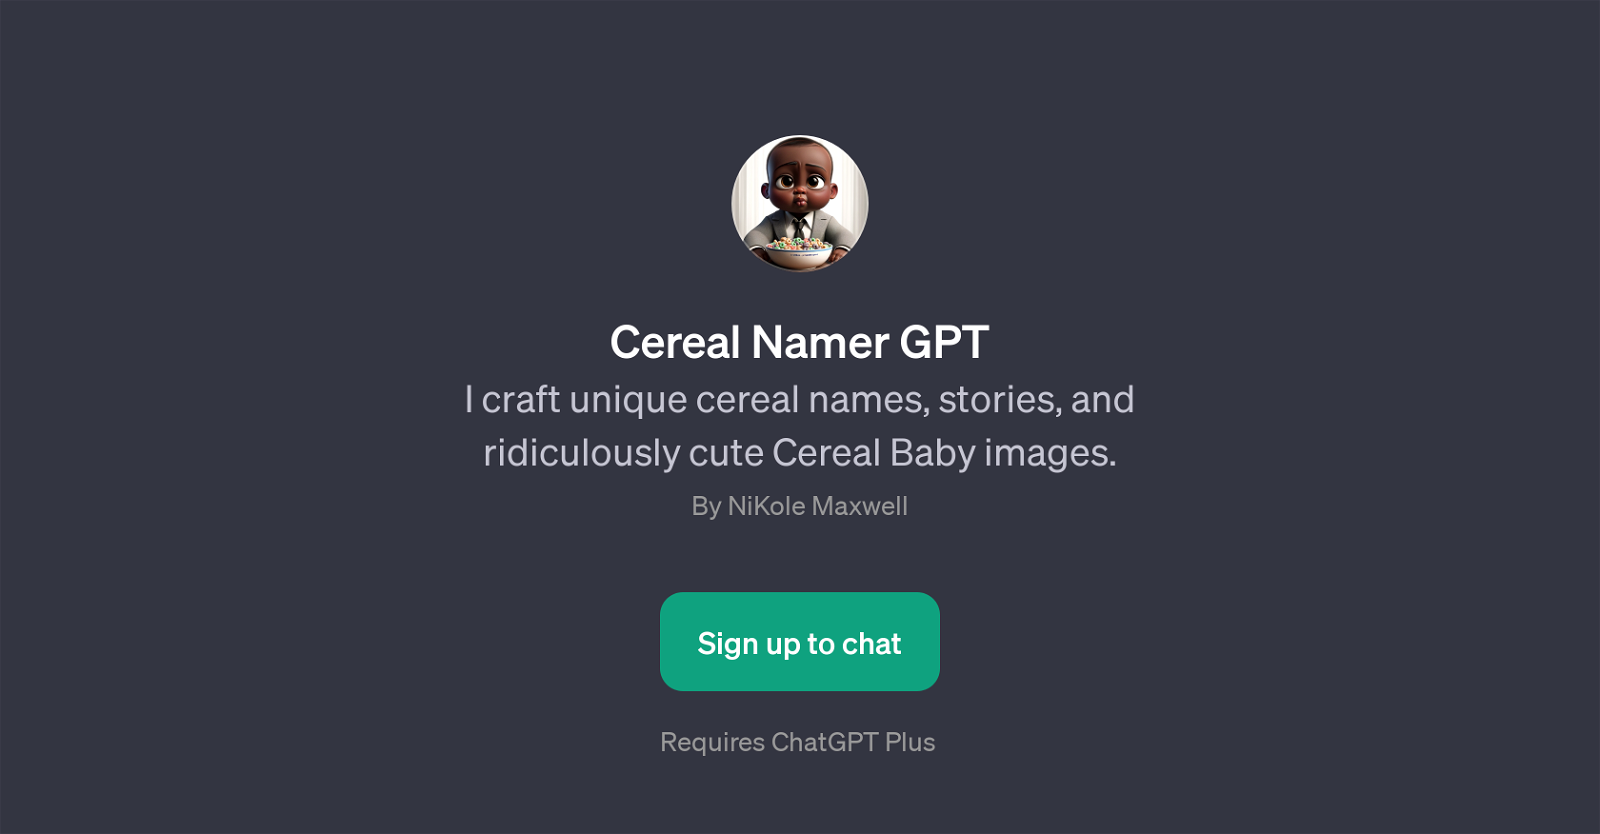 Cereal Namer GPT website